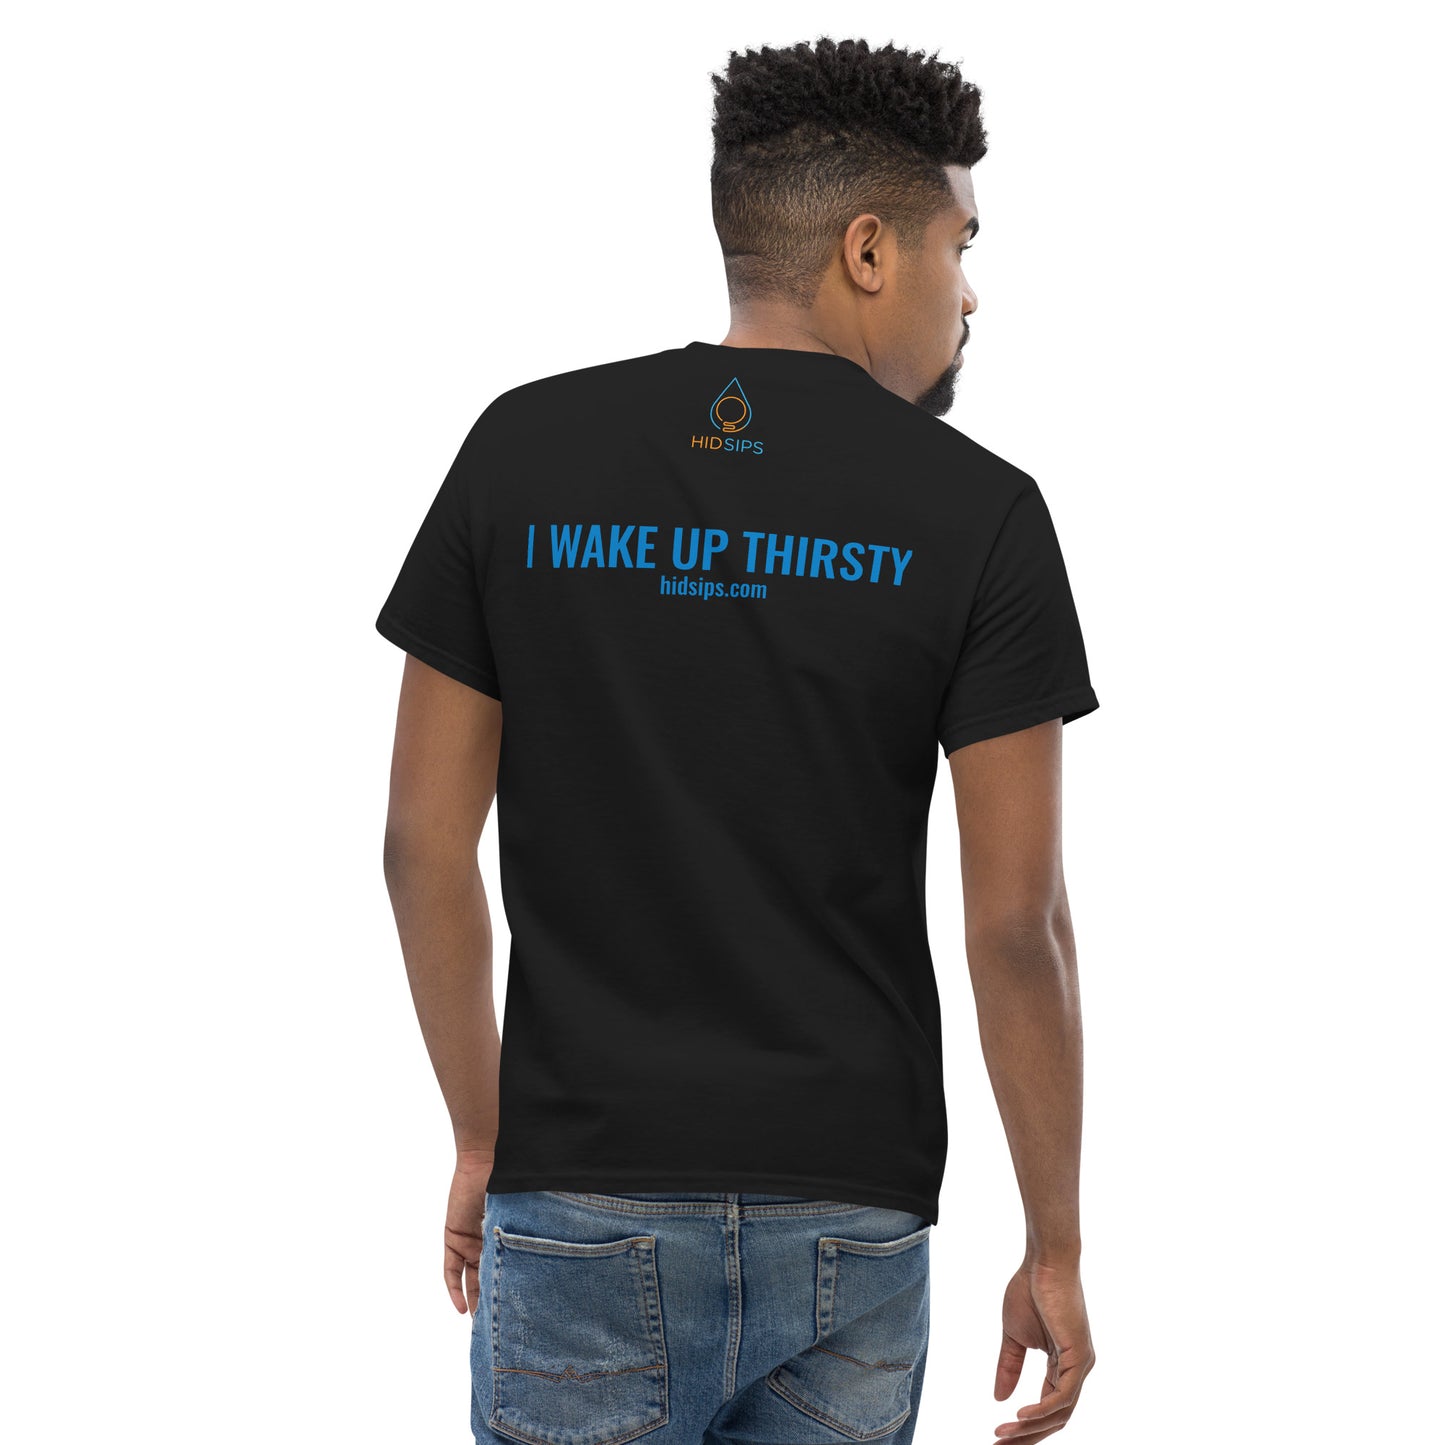 "I WAKE UP THIRSTY" T-Shirt